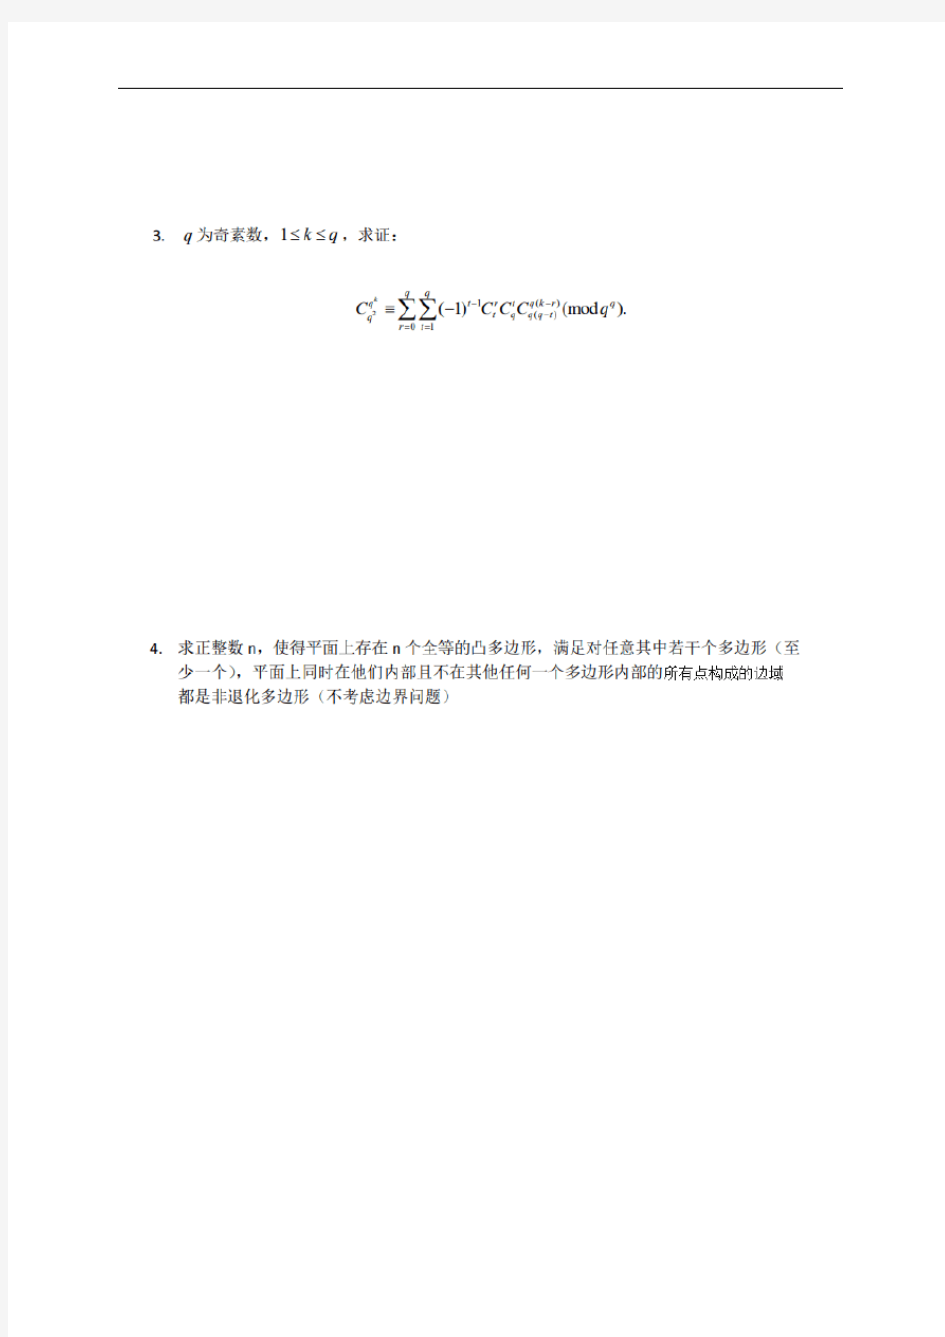 2020年北京大学优秀中学生数学金秋营测试(第二天)试题10.18(扫描版,无答案)